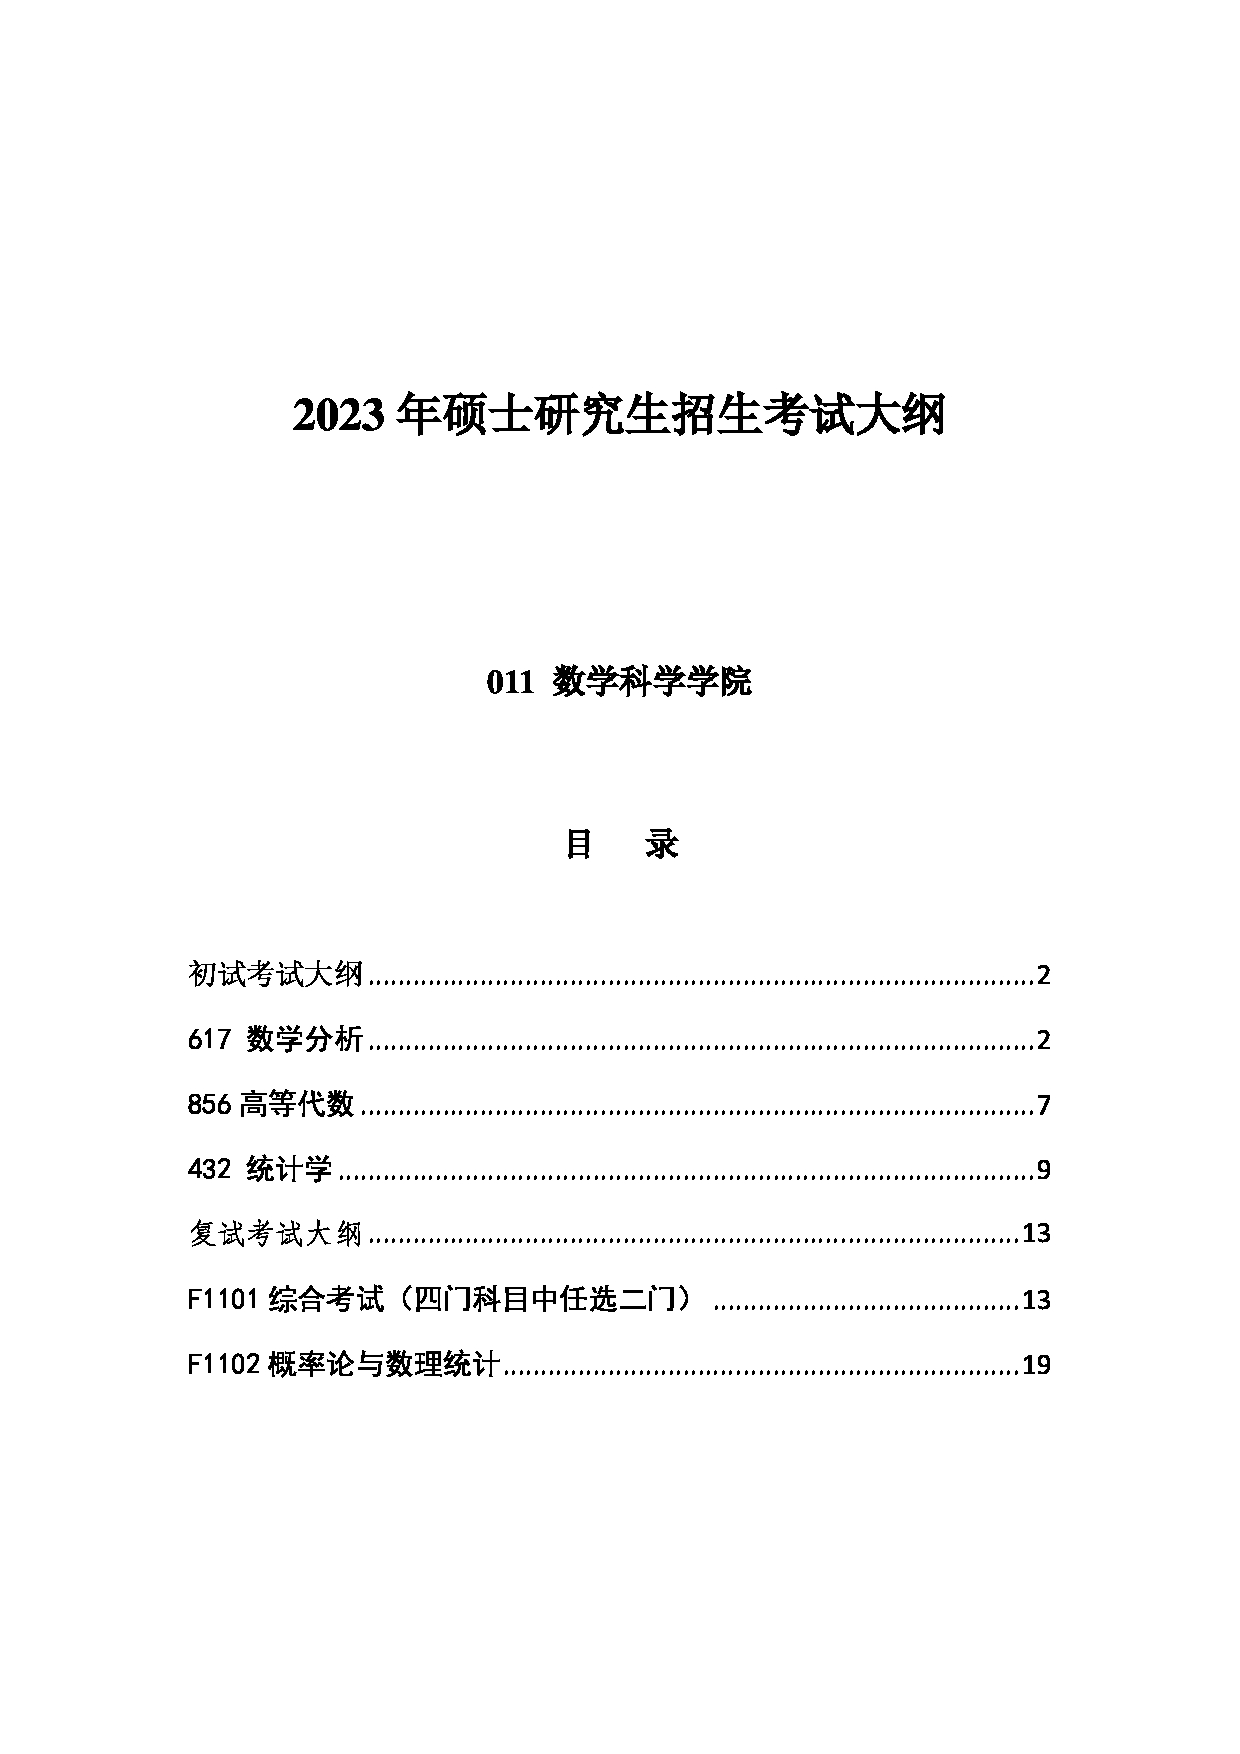 2023考研大纲：中国海洋大学2023年考研 011数学科学学院 考试大纲第1页